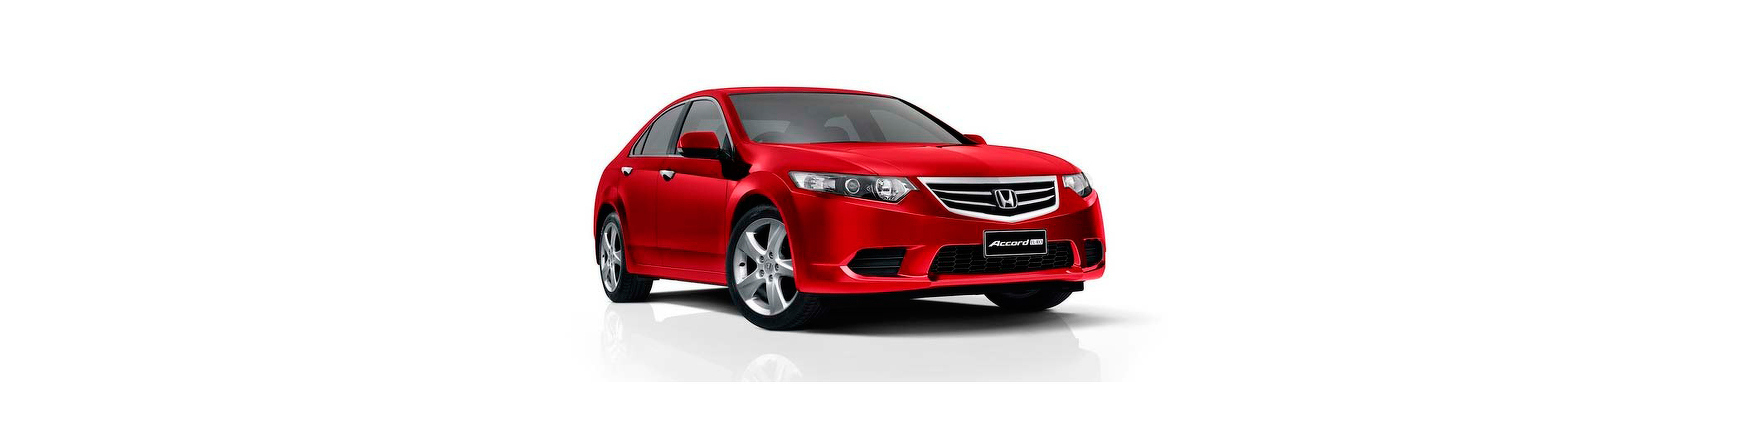 Piezas y Recambios de Honda Accord de 2012 al 2017 | Veramauto.es